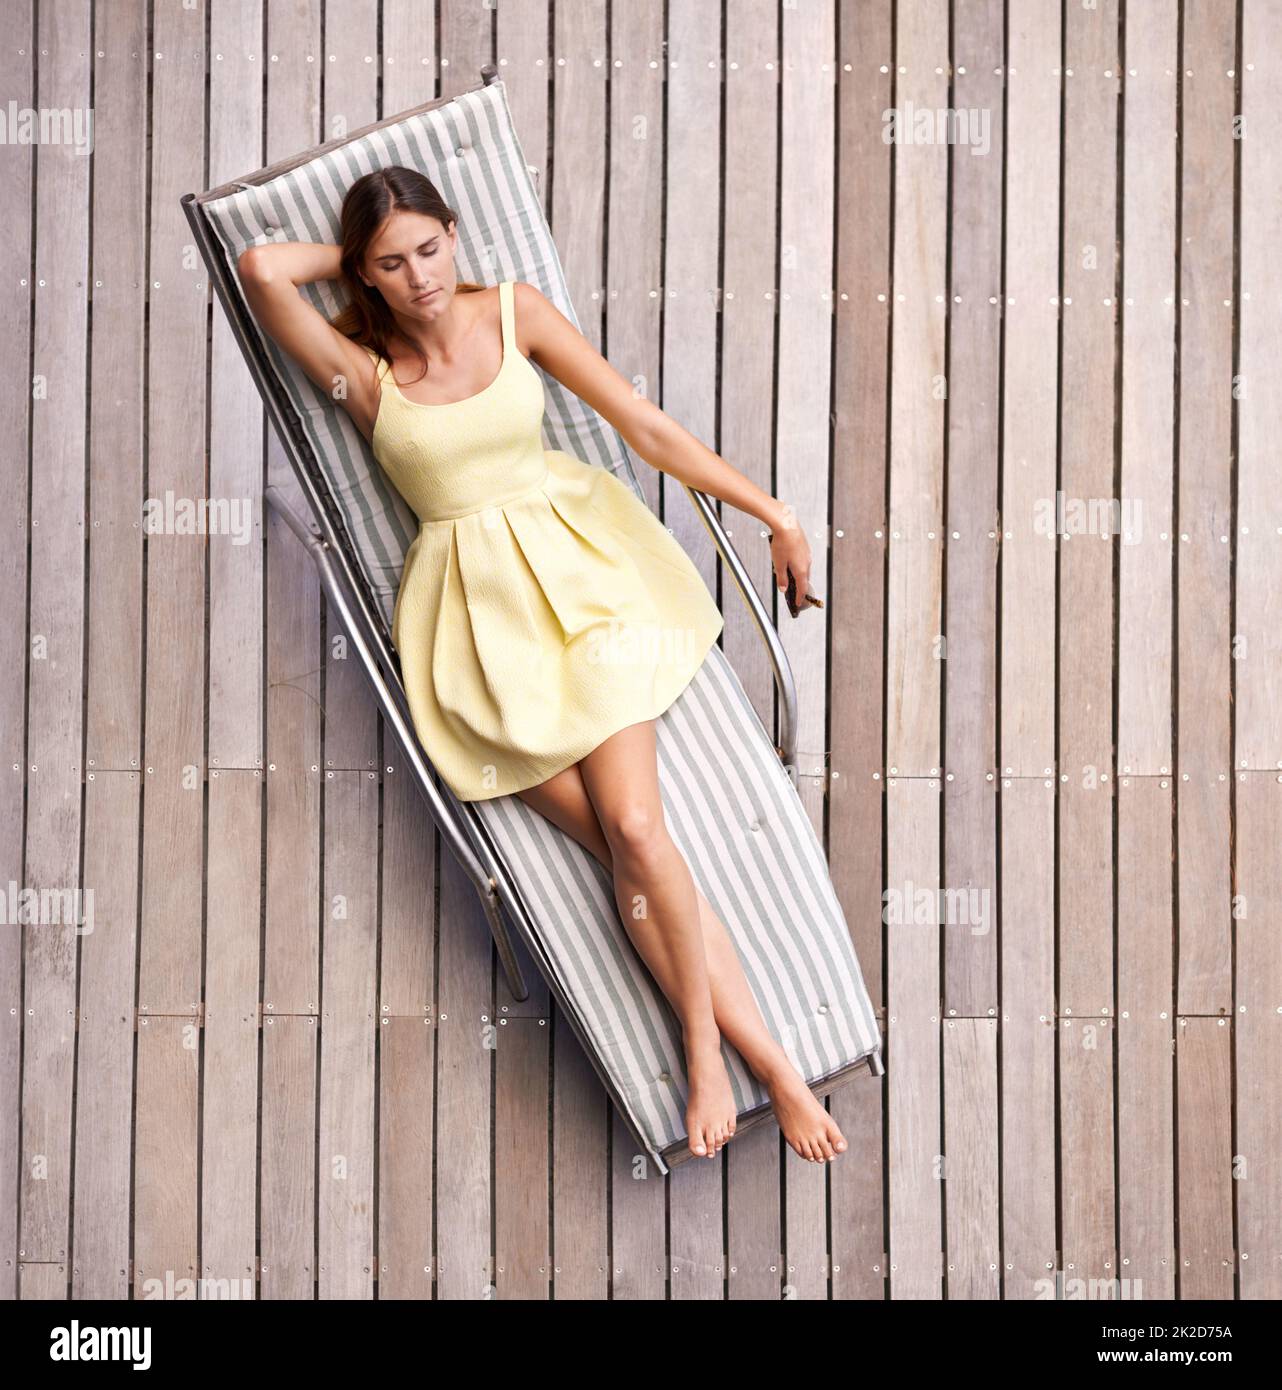 Stilvoll entspannen. Eine junge, wohlhabende Frau, die in einem Sommerkleid auf ihrer Liege liegt. Stockfoto